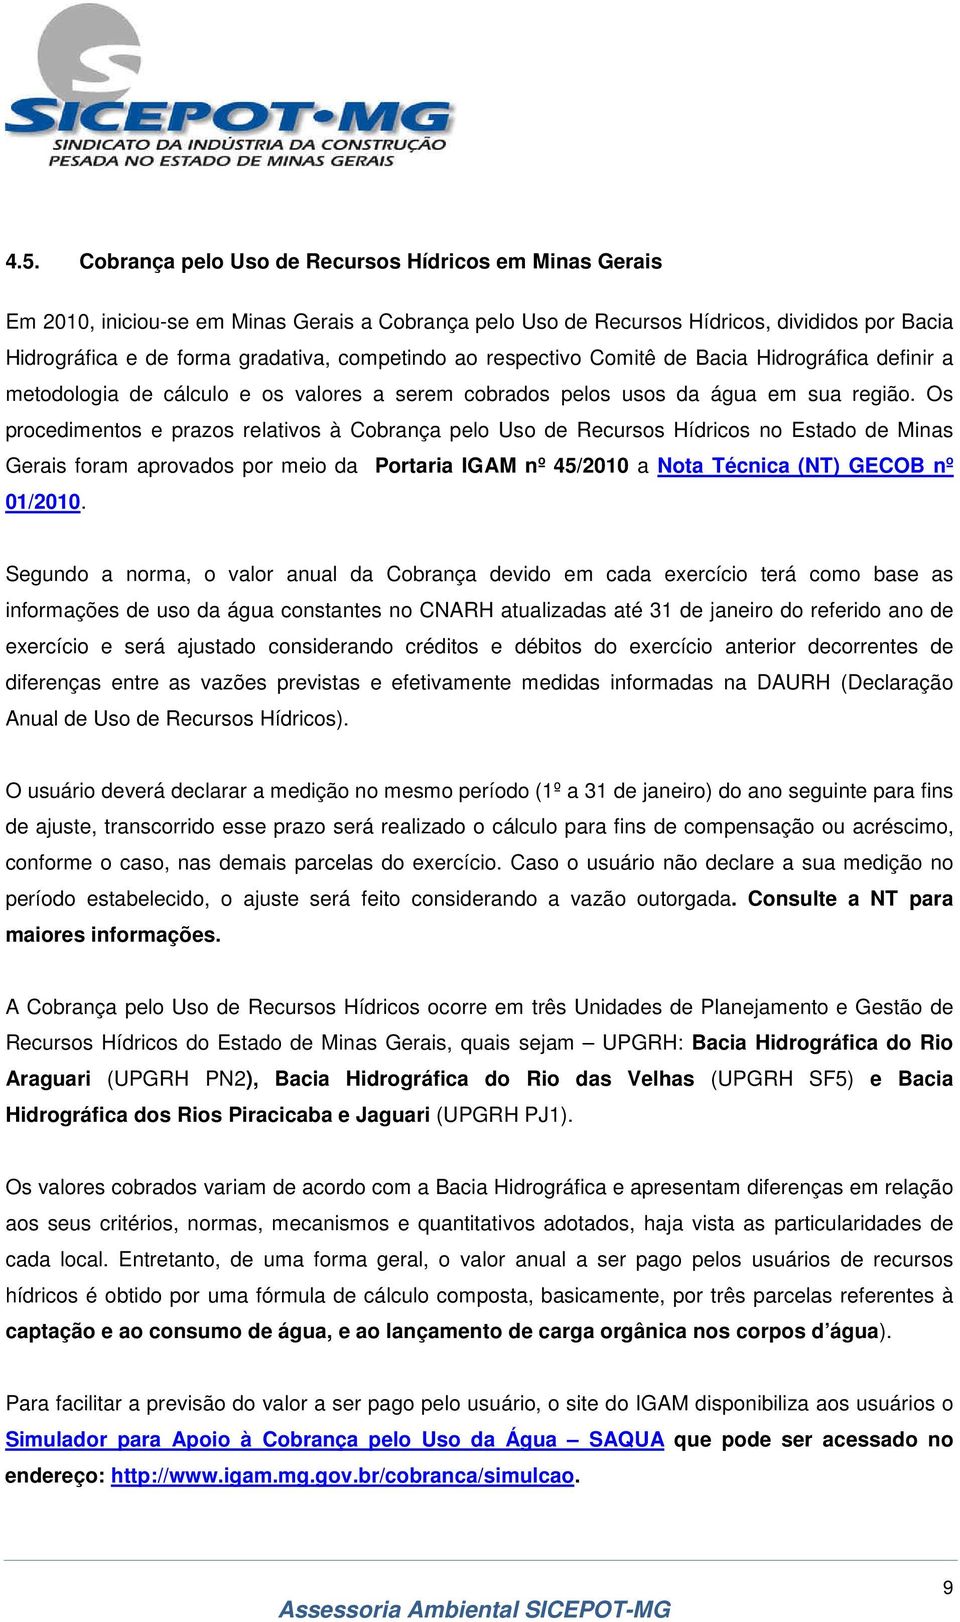 Os procedimentos e prazos relativos à Cobrança pelo Uso de Recursos Hídricos no Estado de Minas Gerais foram aprovados por meio da Portaria IGAM nº 45/2010 a Nota Técnica (NT) GECOB nº 01/2010.